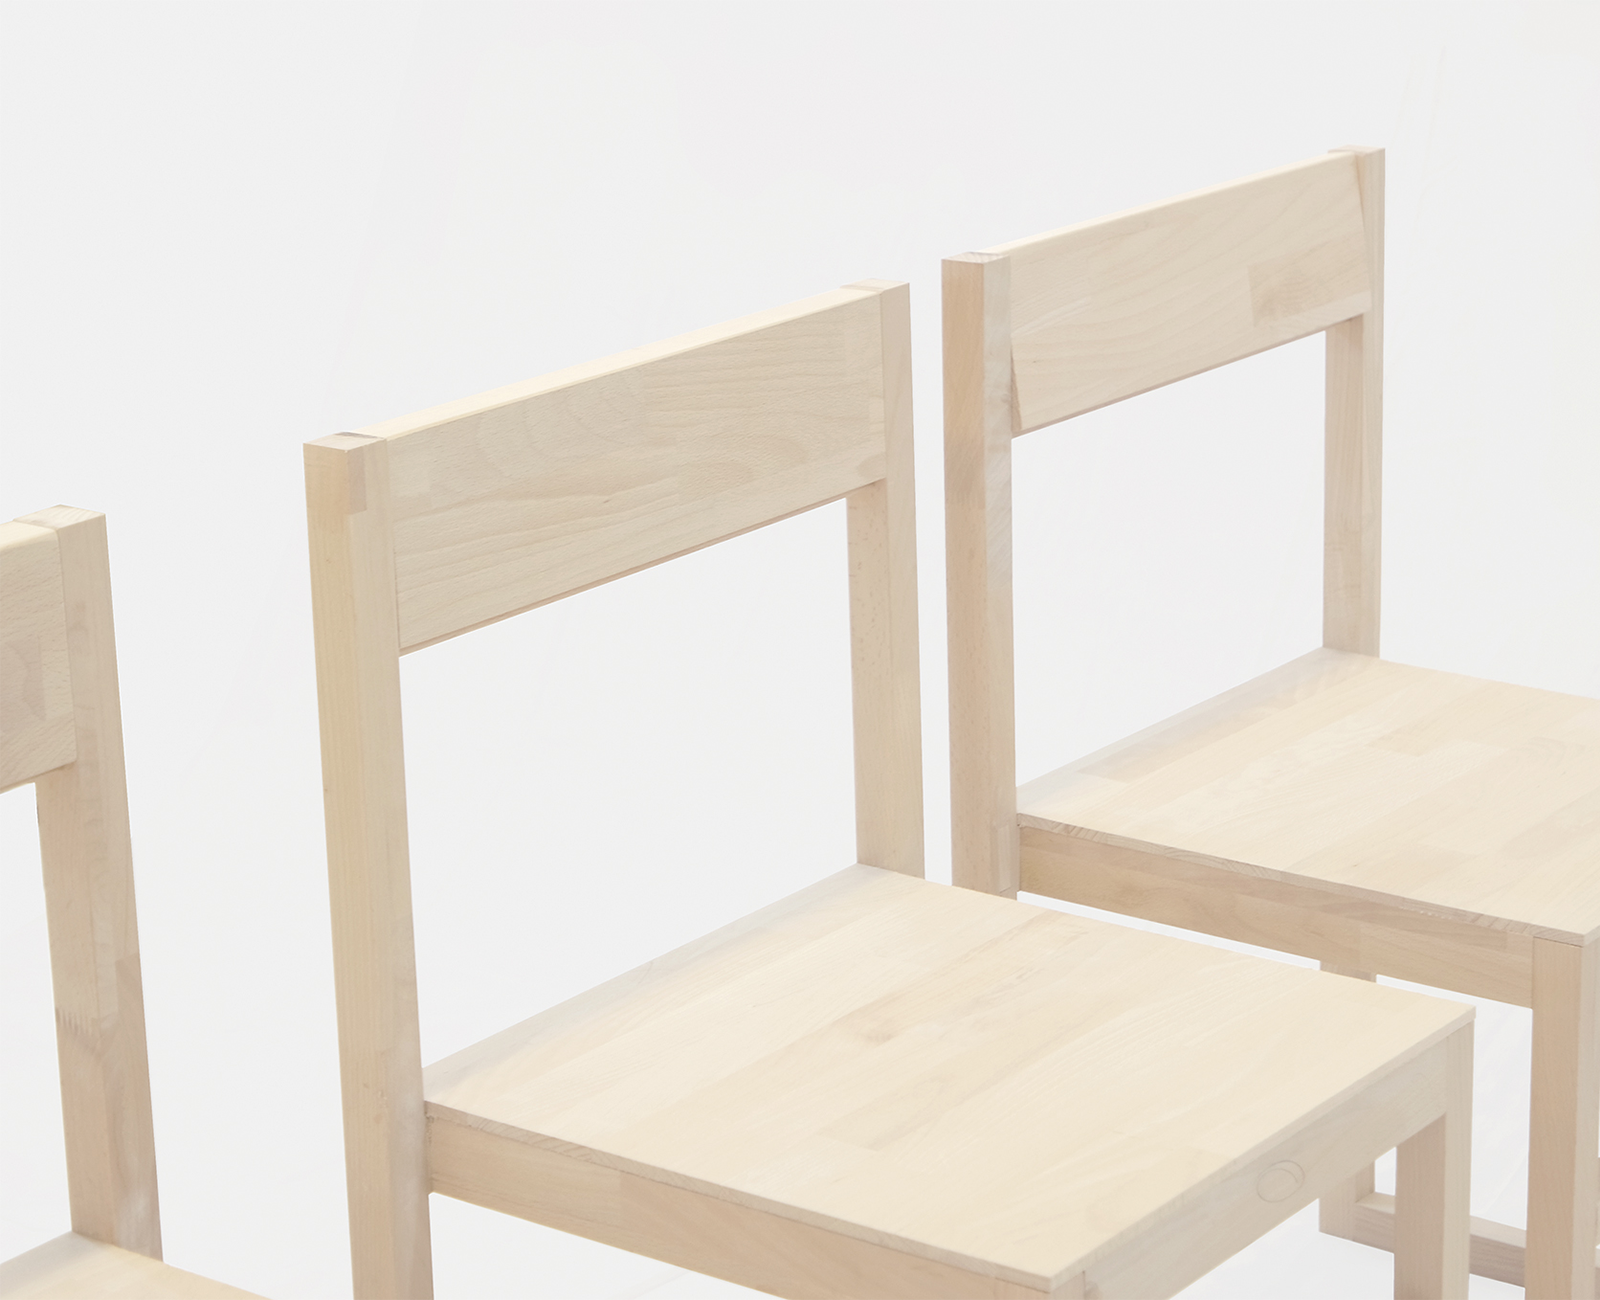 Rjr wooden chair